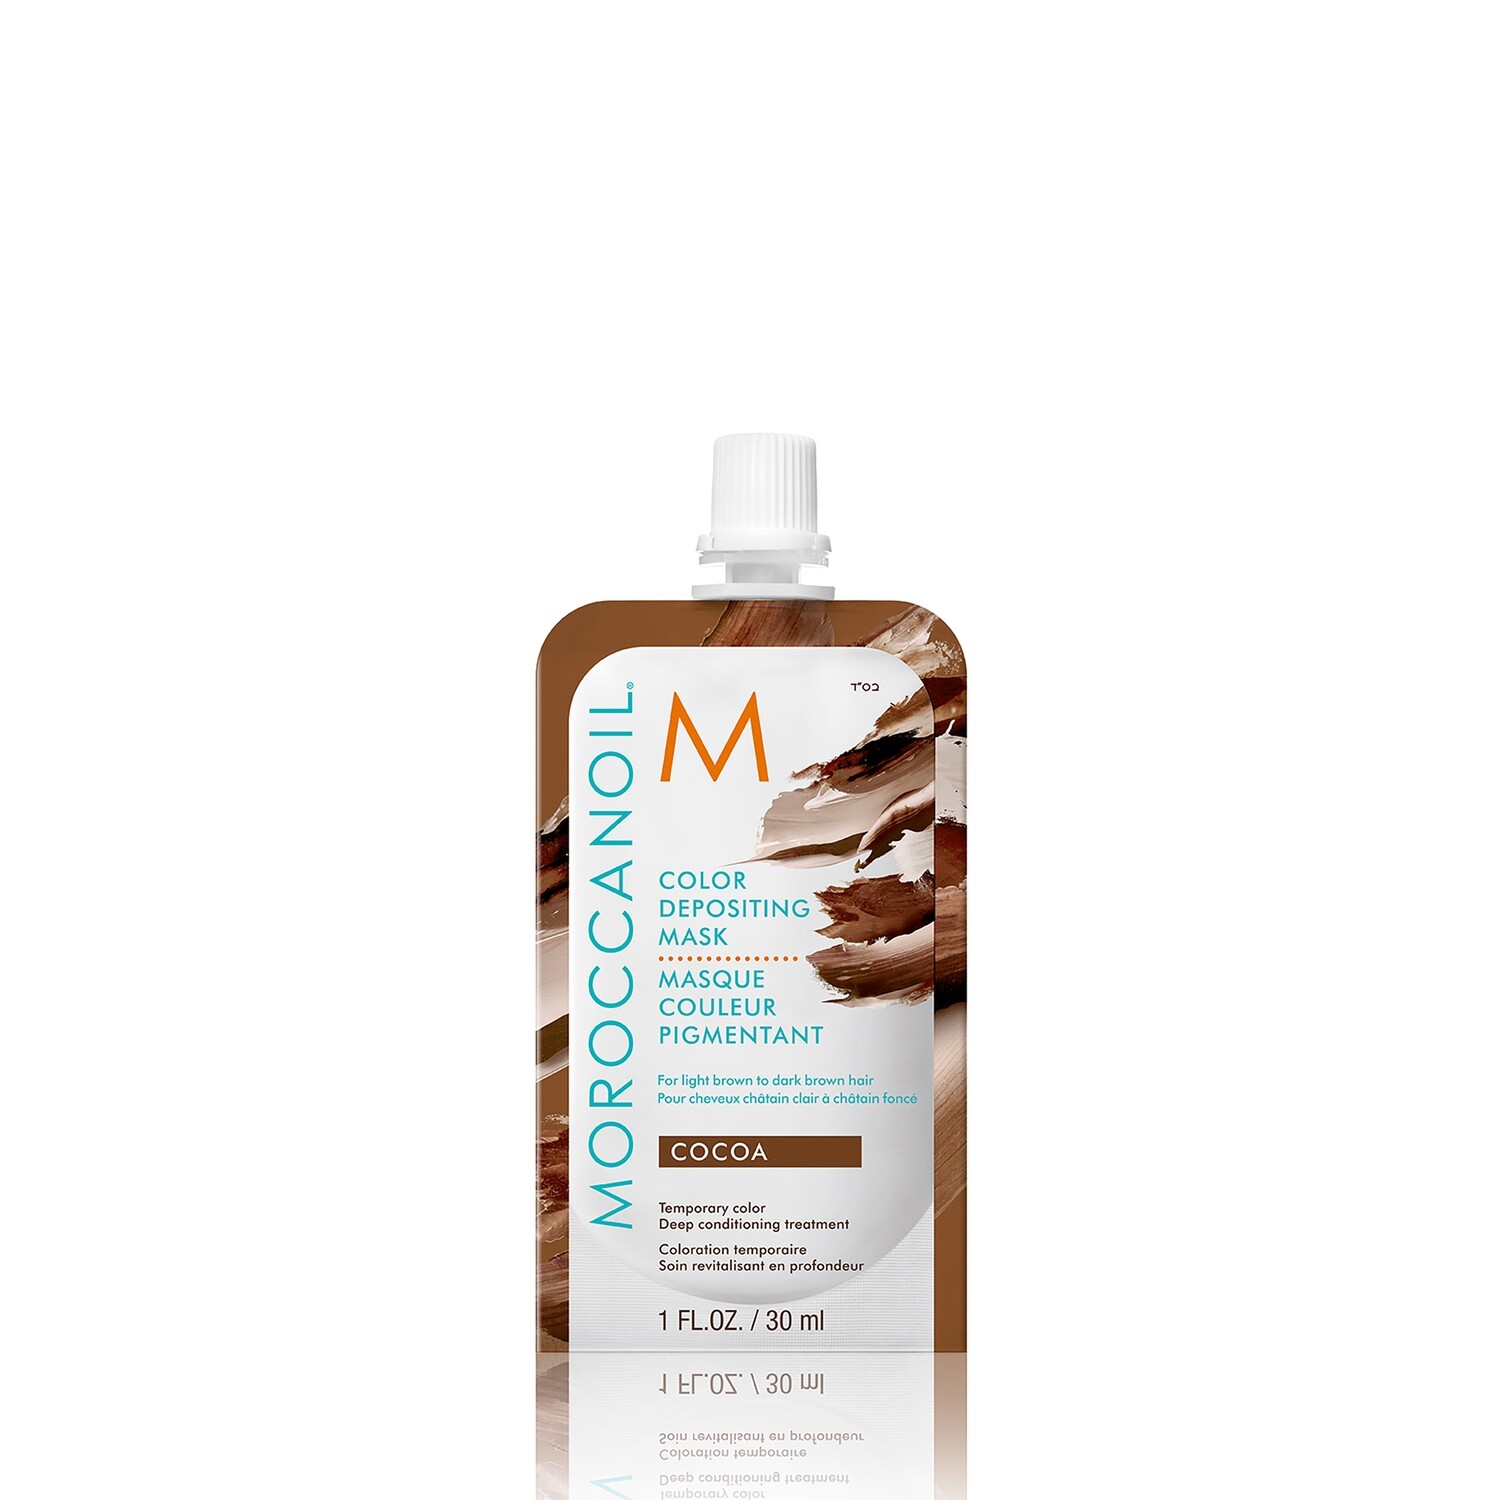 Moroccanoil / Masque Pigmentant Cocoa 30ml